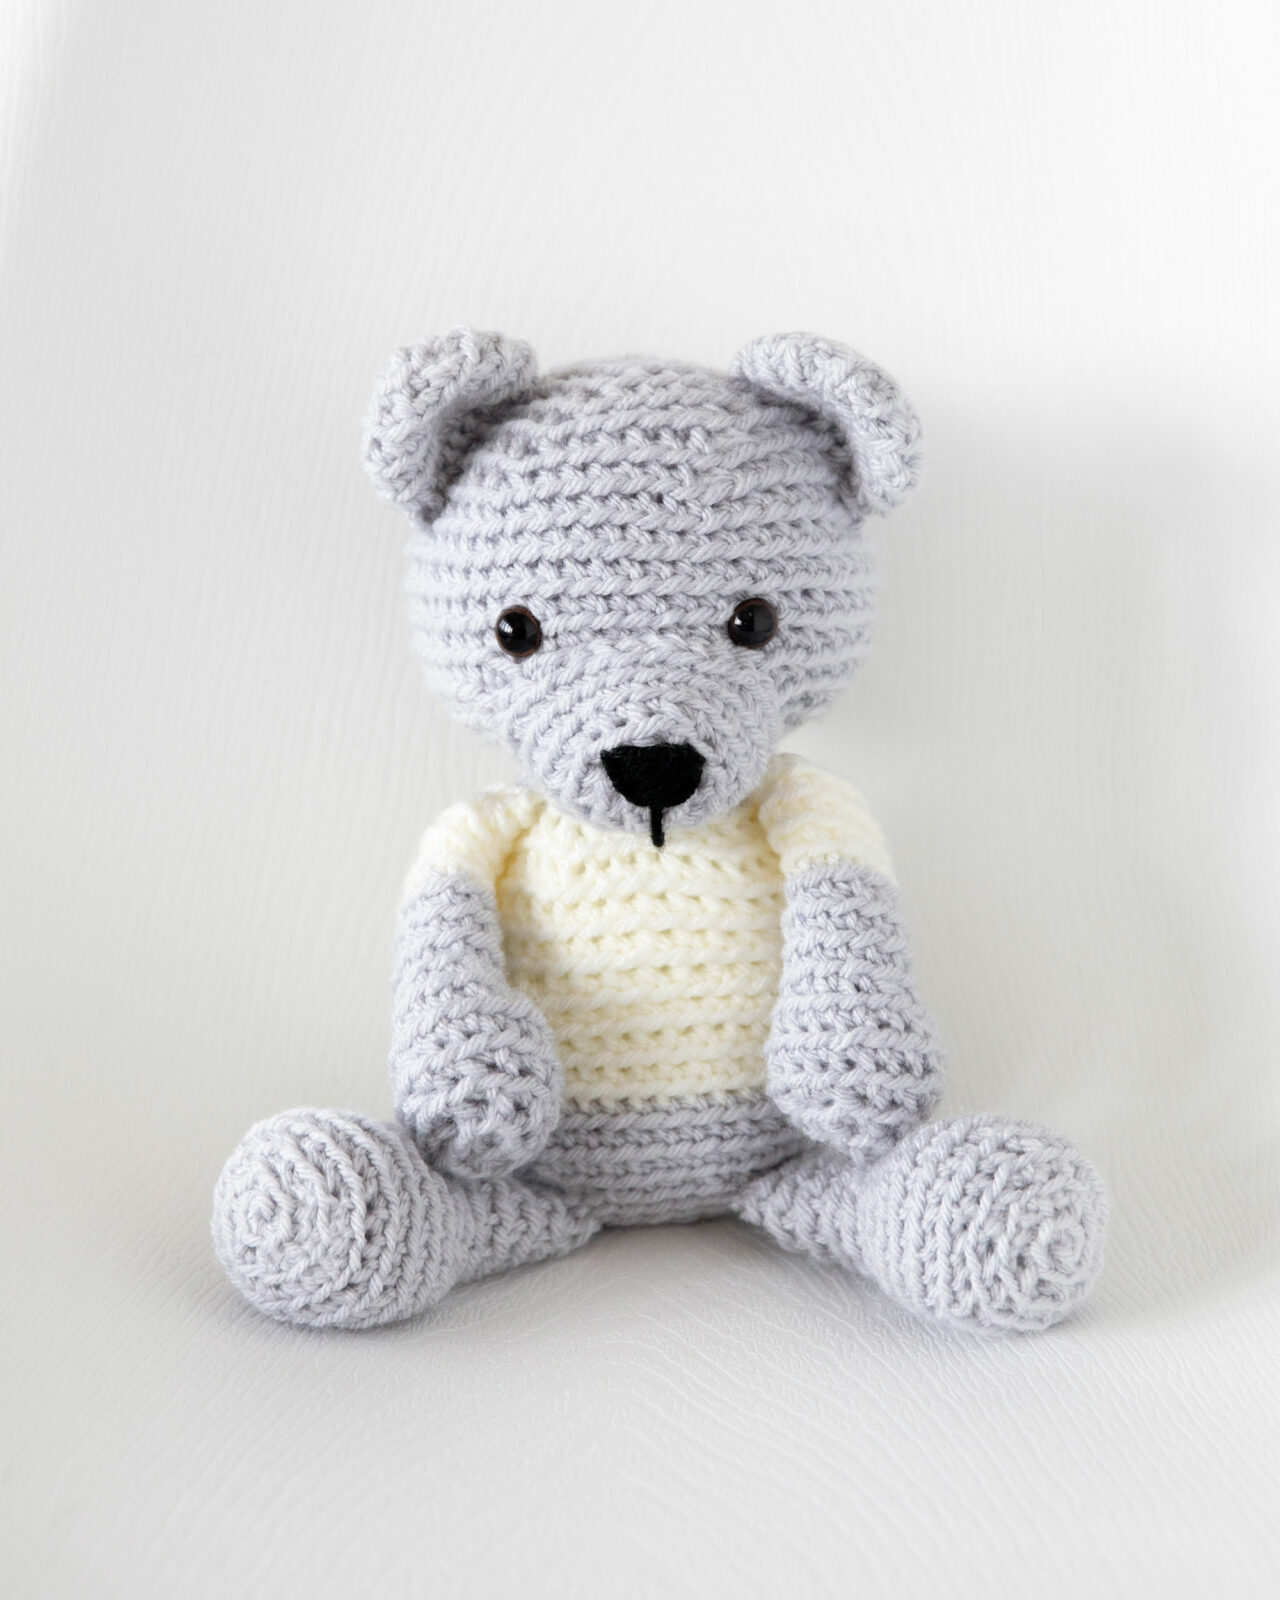 Teddy bear crochet pattern free